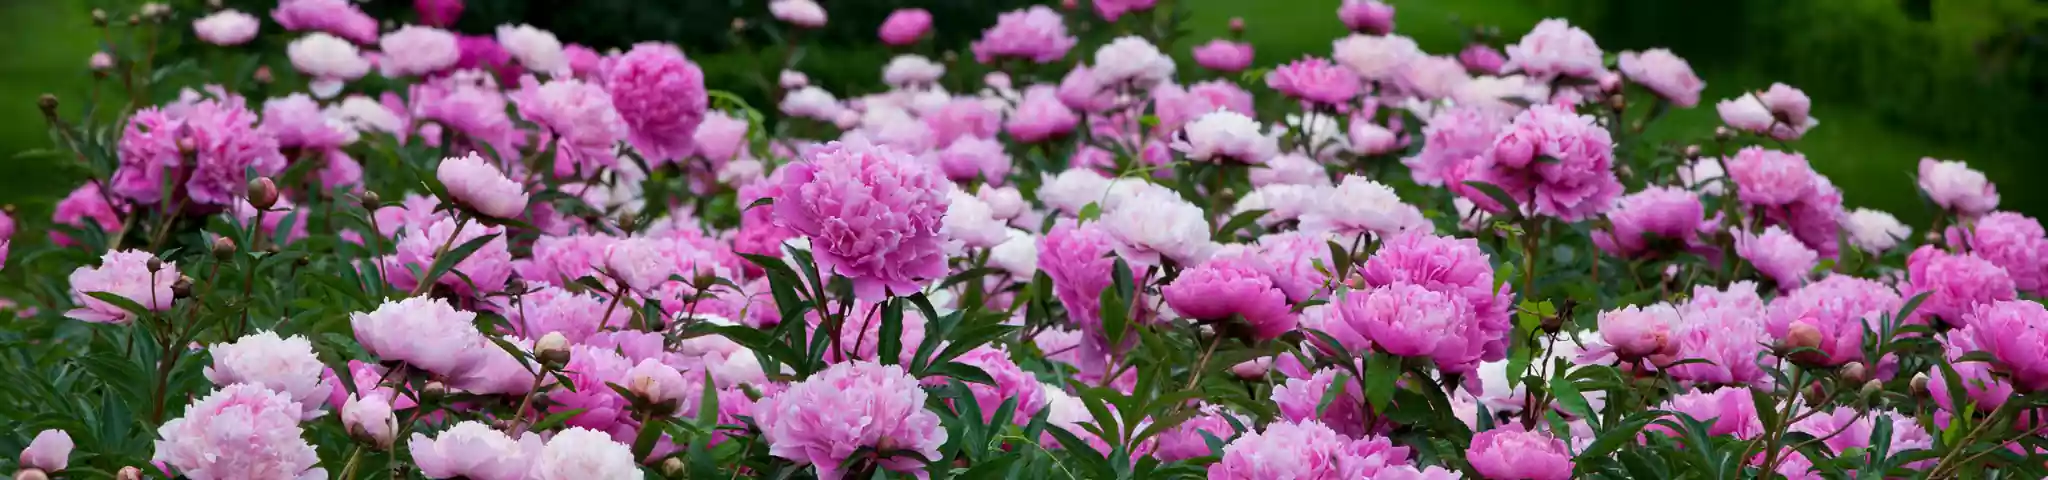 Pink Peony Flowers in Garden